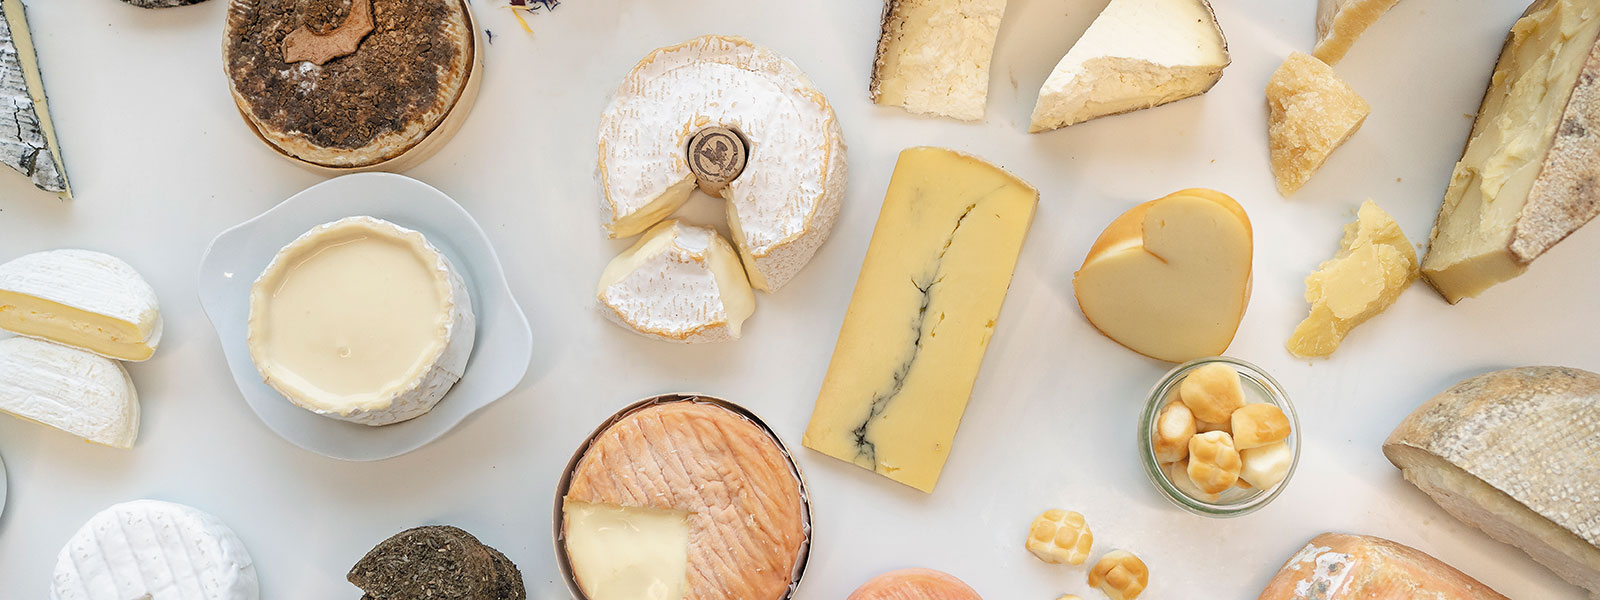 Bild von einer großen Käseplatte mit vielen angeschnittenen Käsen